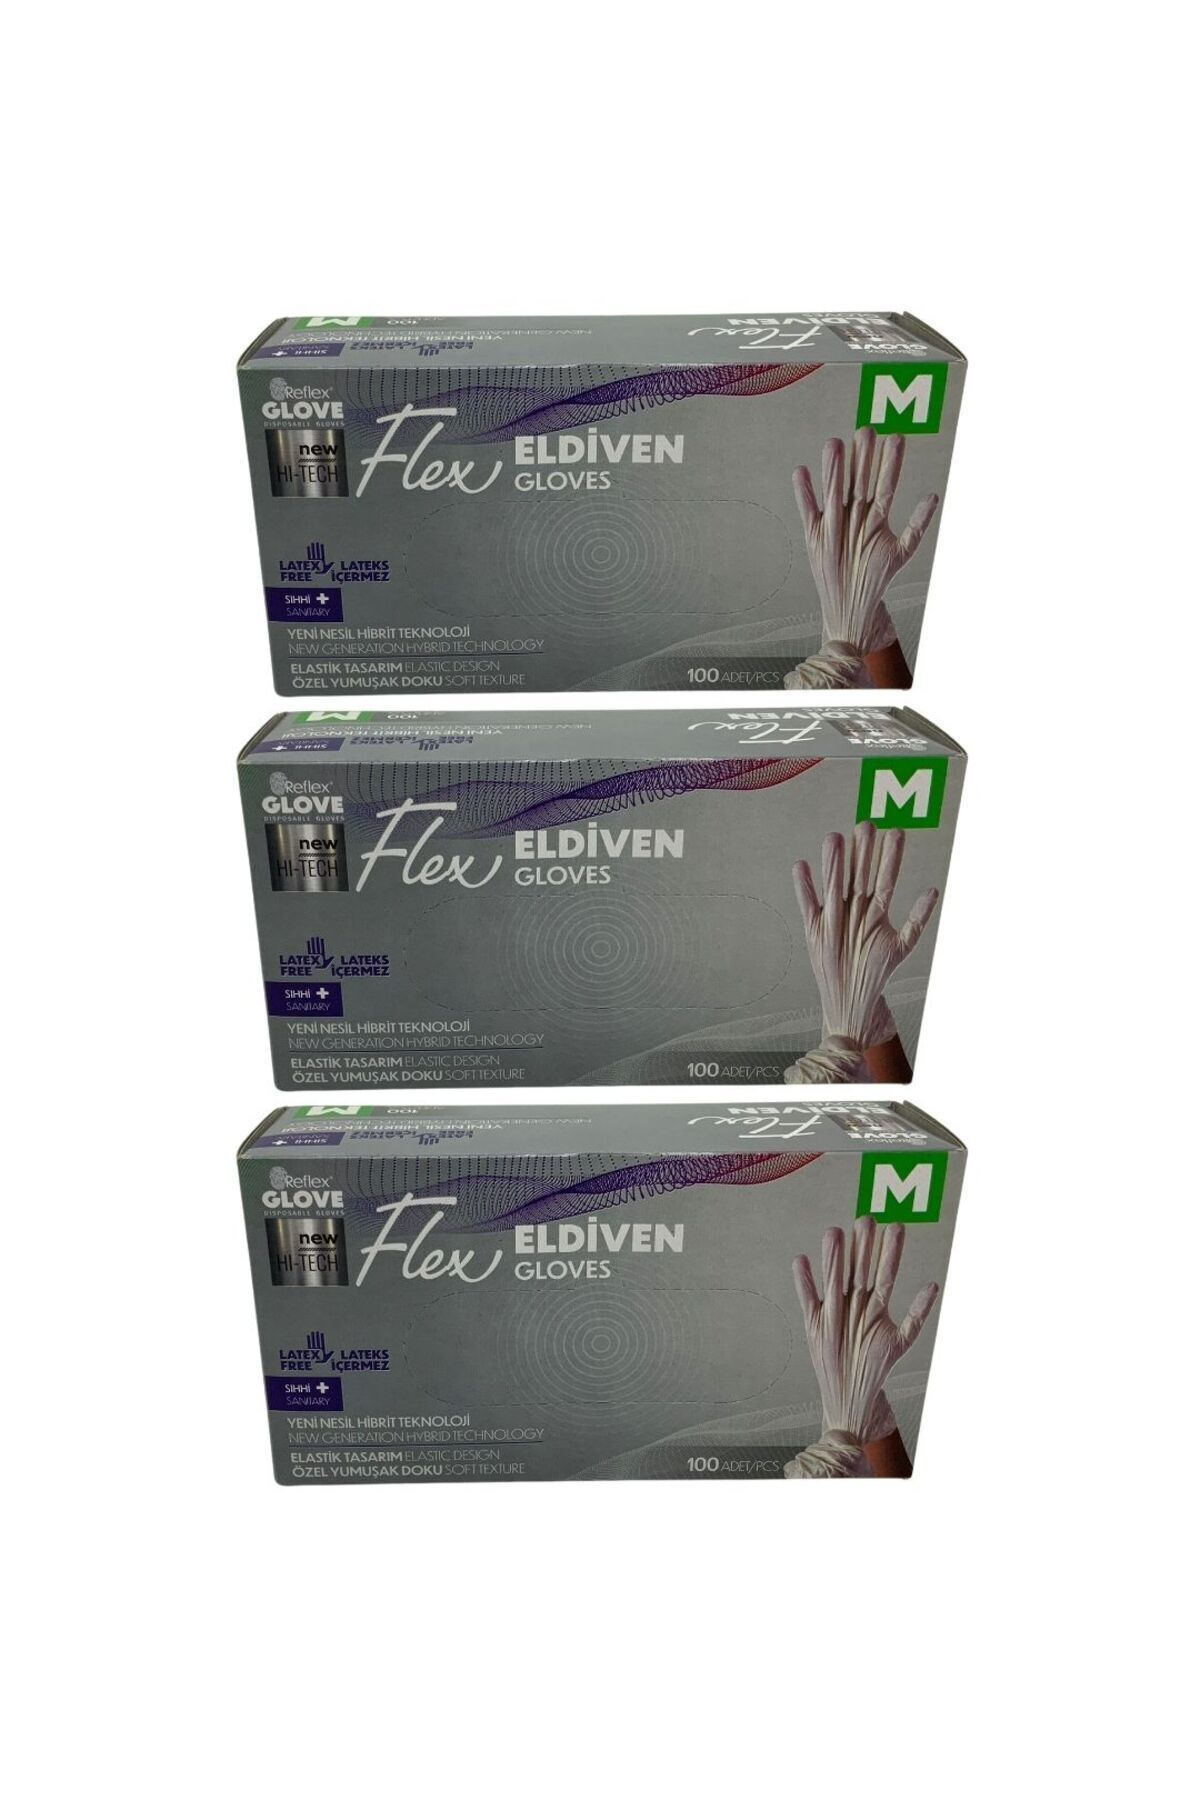 Reflex Glove Flex Eldiven M 100 Adet 3 Adet